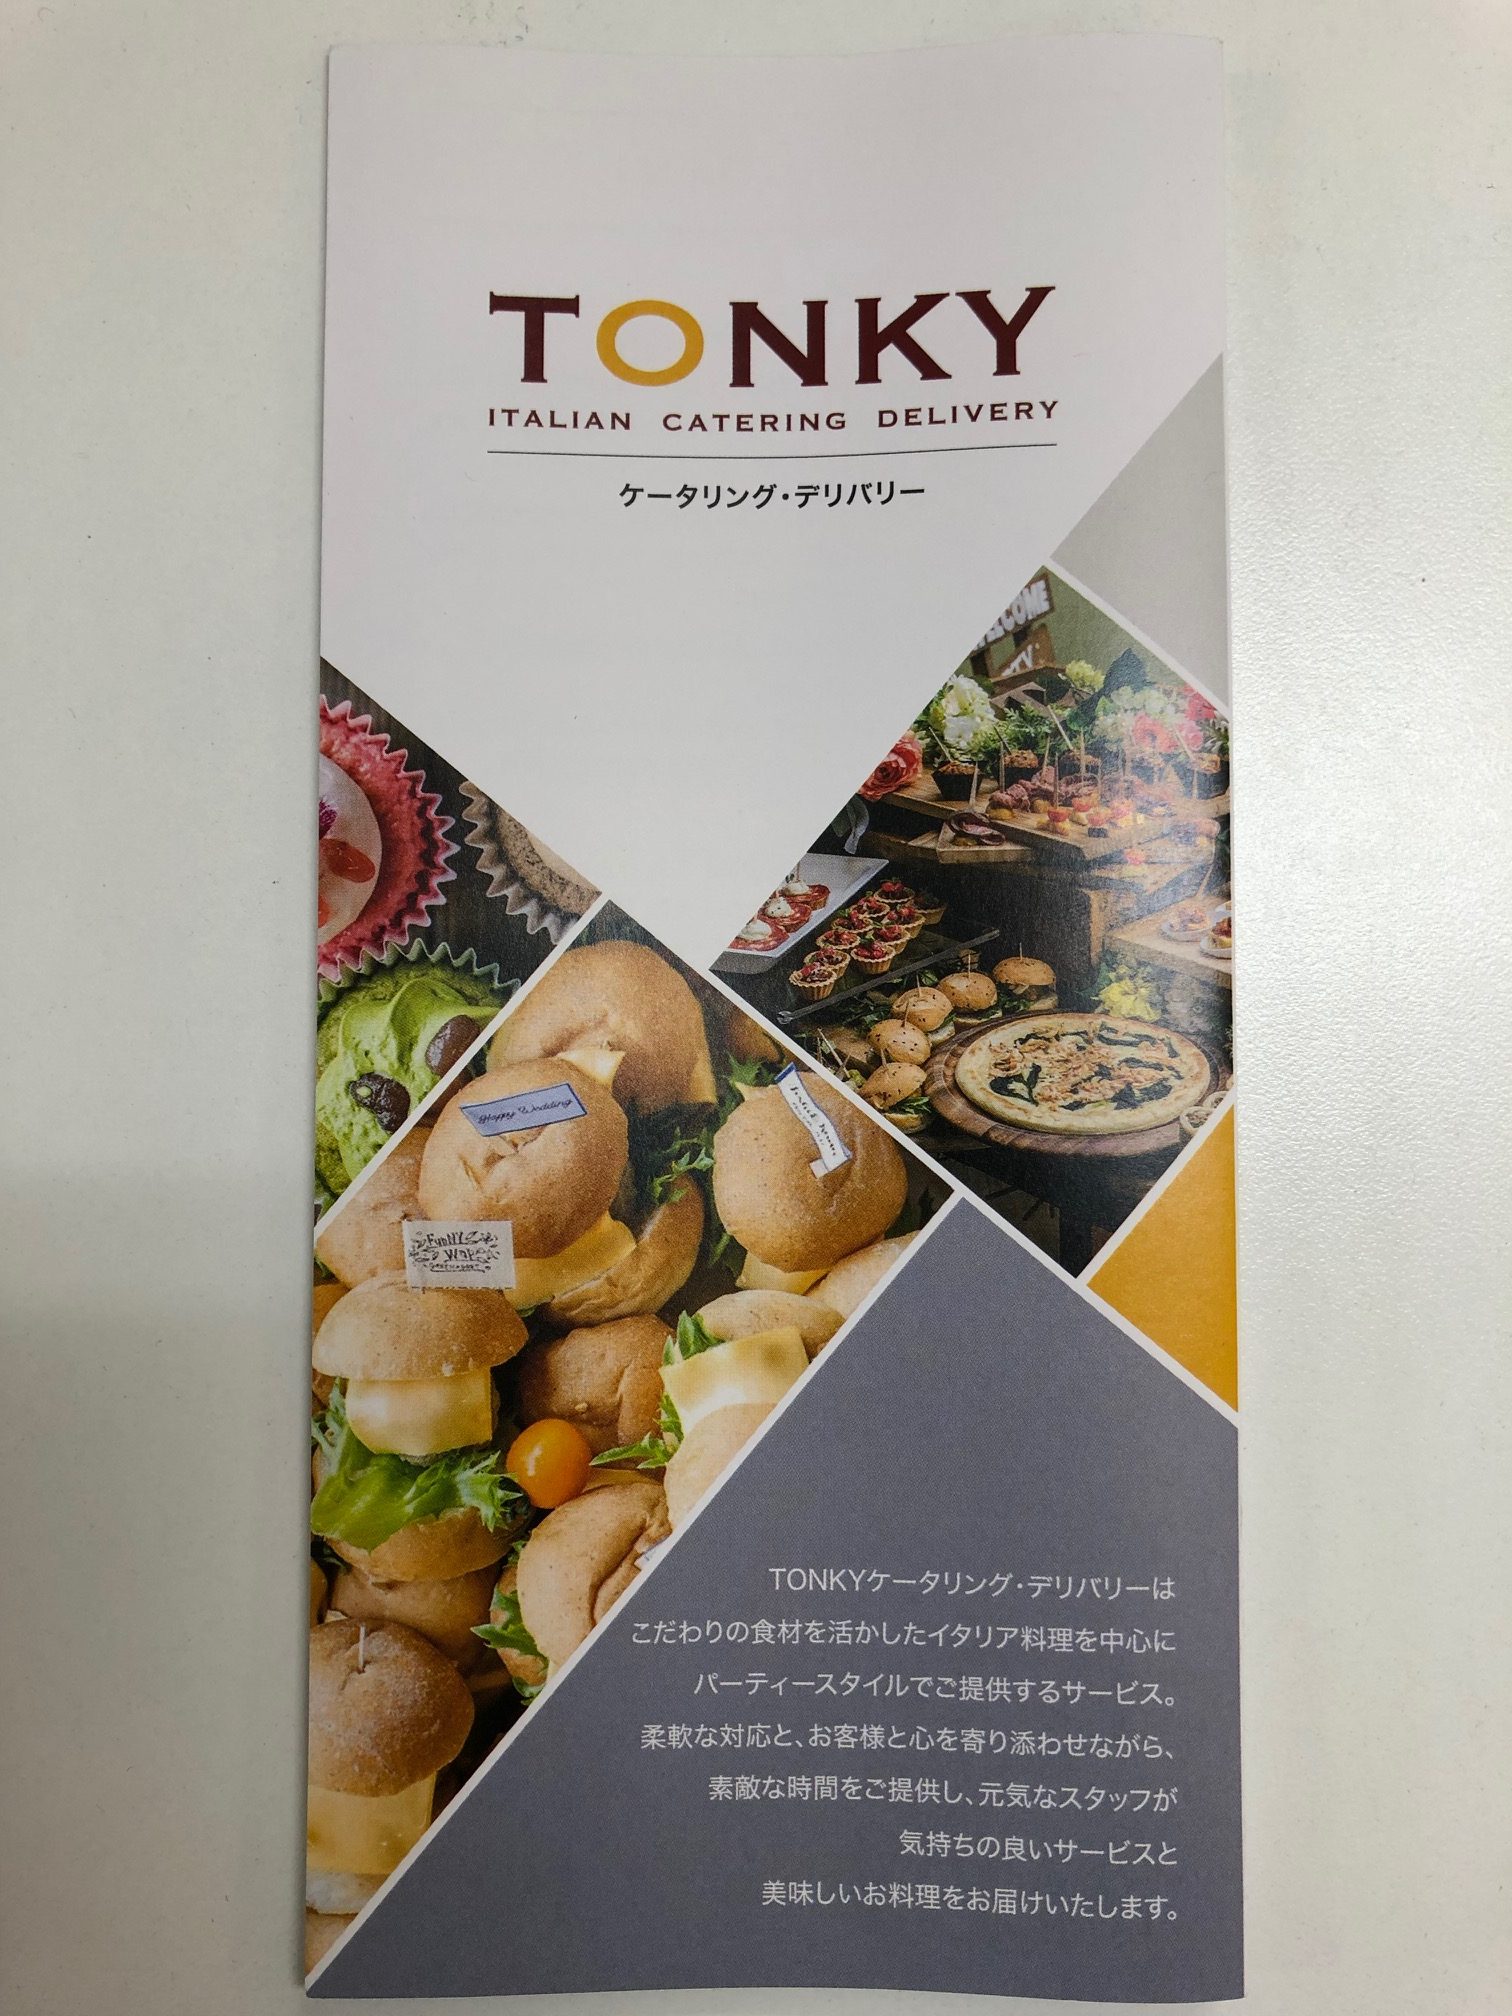 TONKYケータリングのNEWパンフレット完成!!